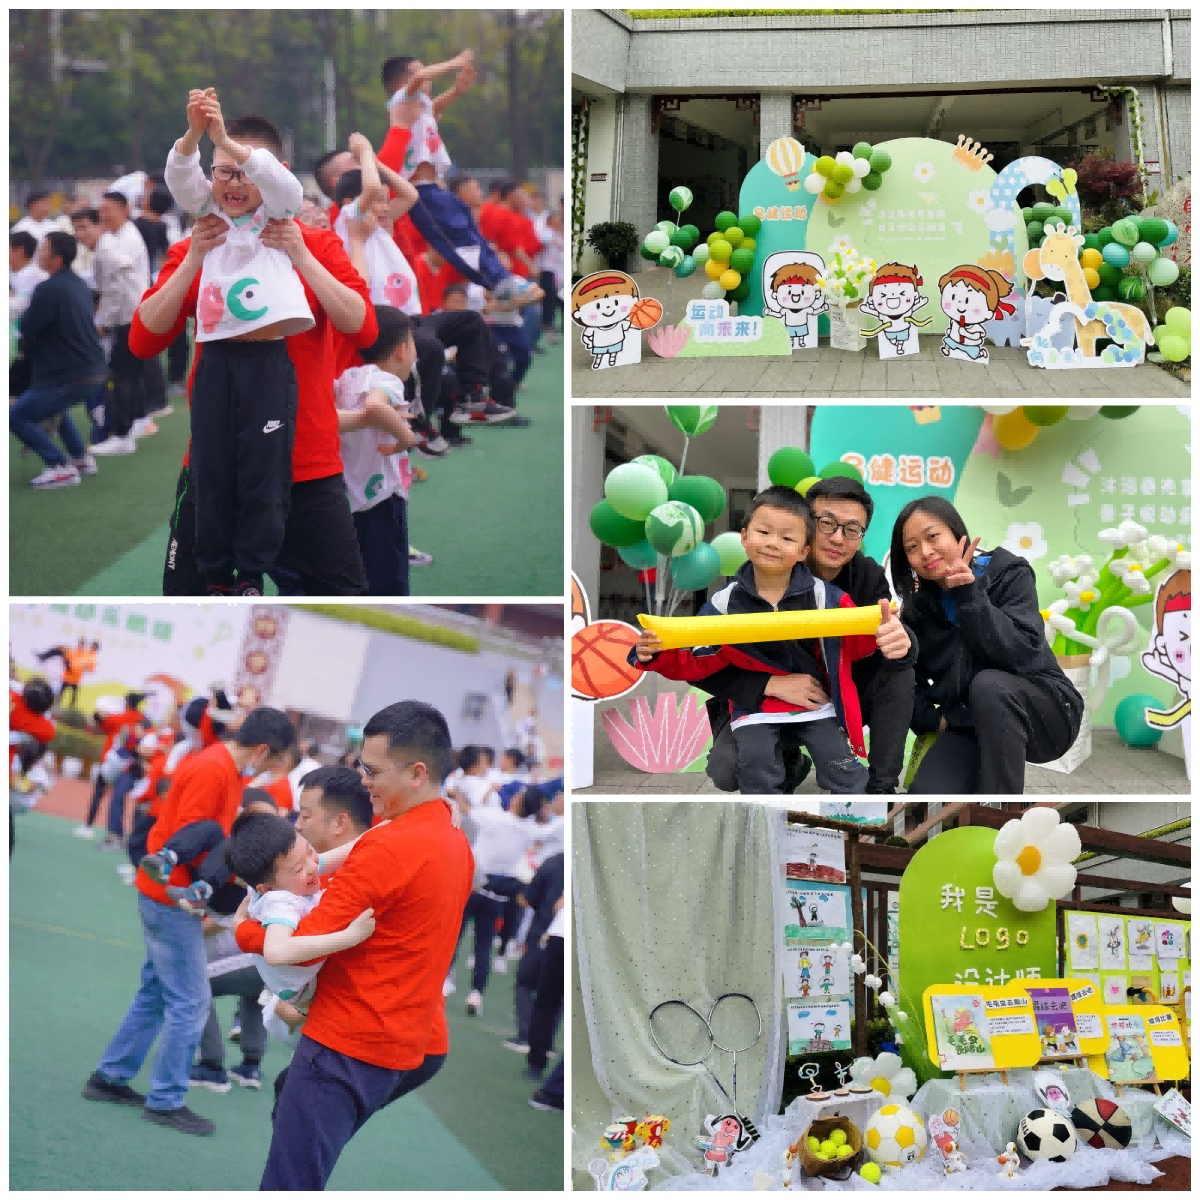 成都市温江区鹏程幼儿园举办第一届春季运动节